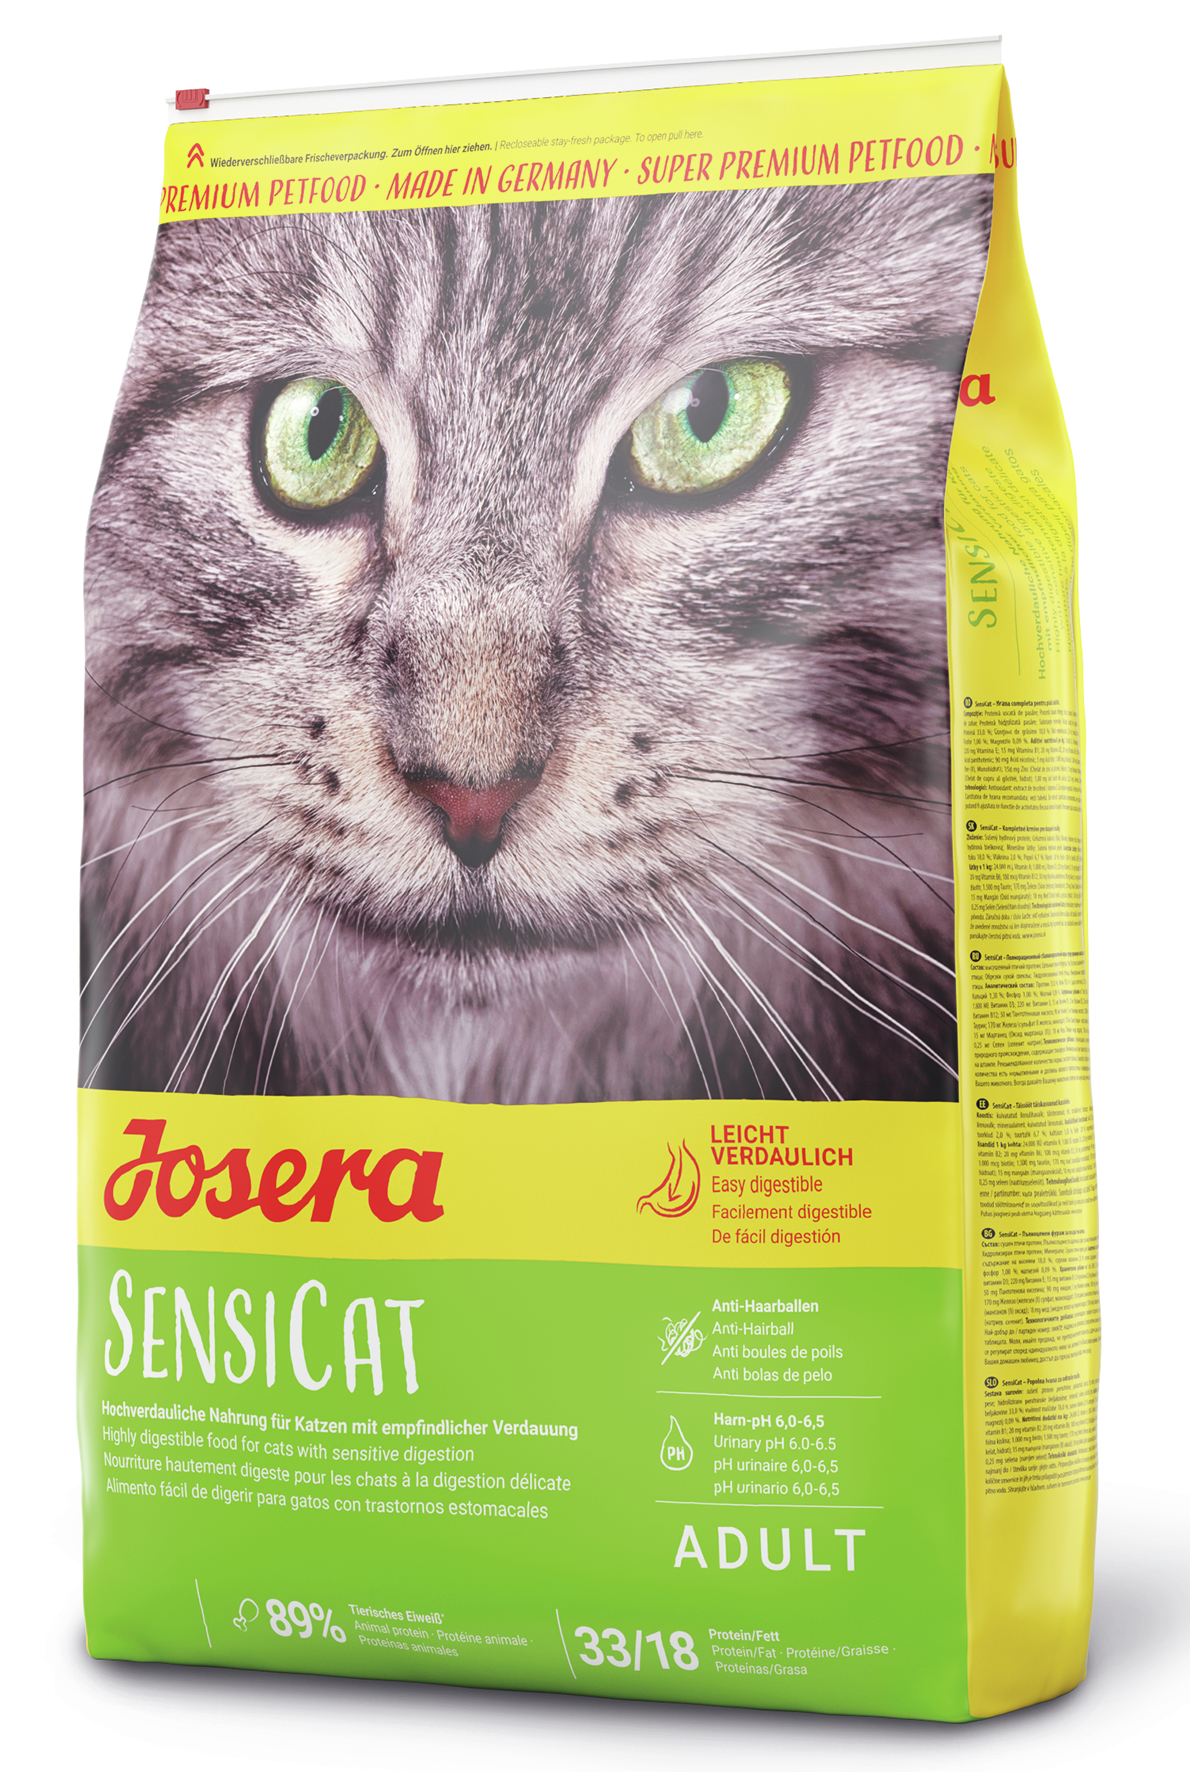 GRUNER Josera SensiCat 400g neu Katzenfutter Super Premium